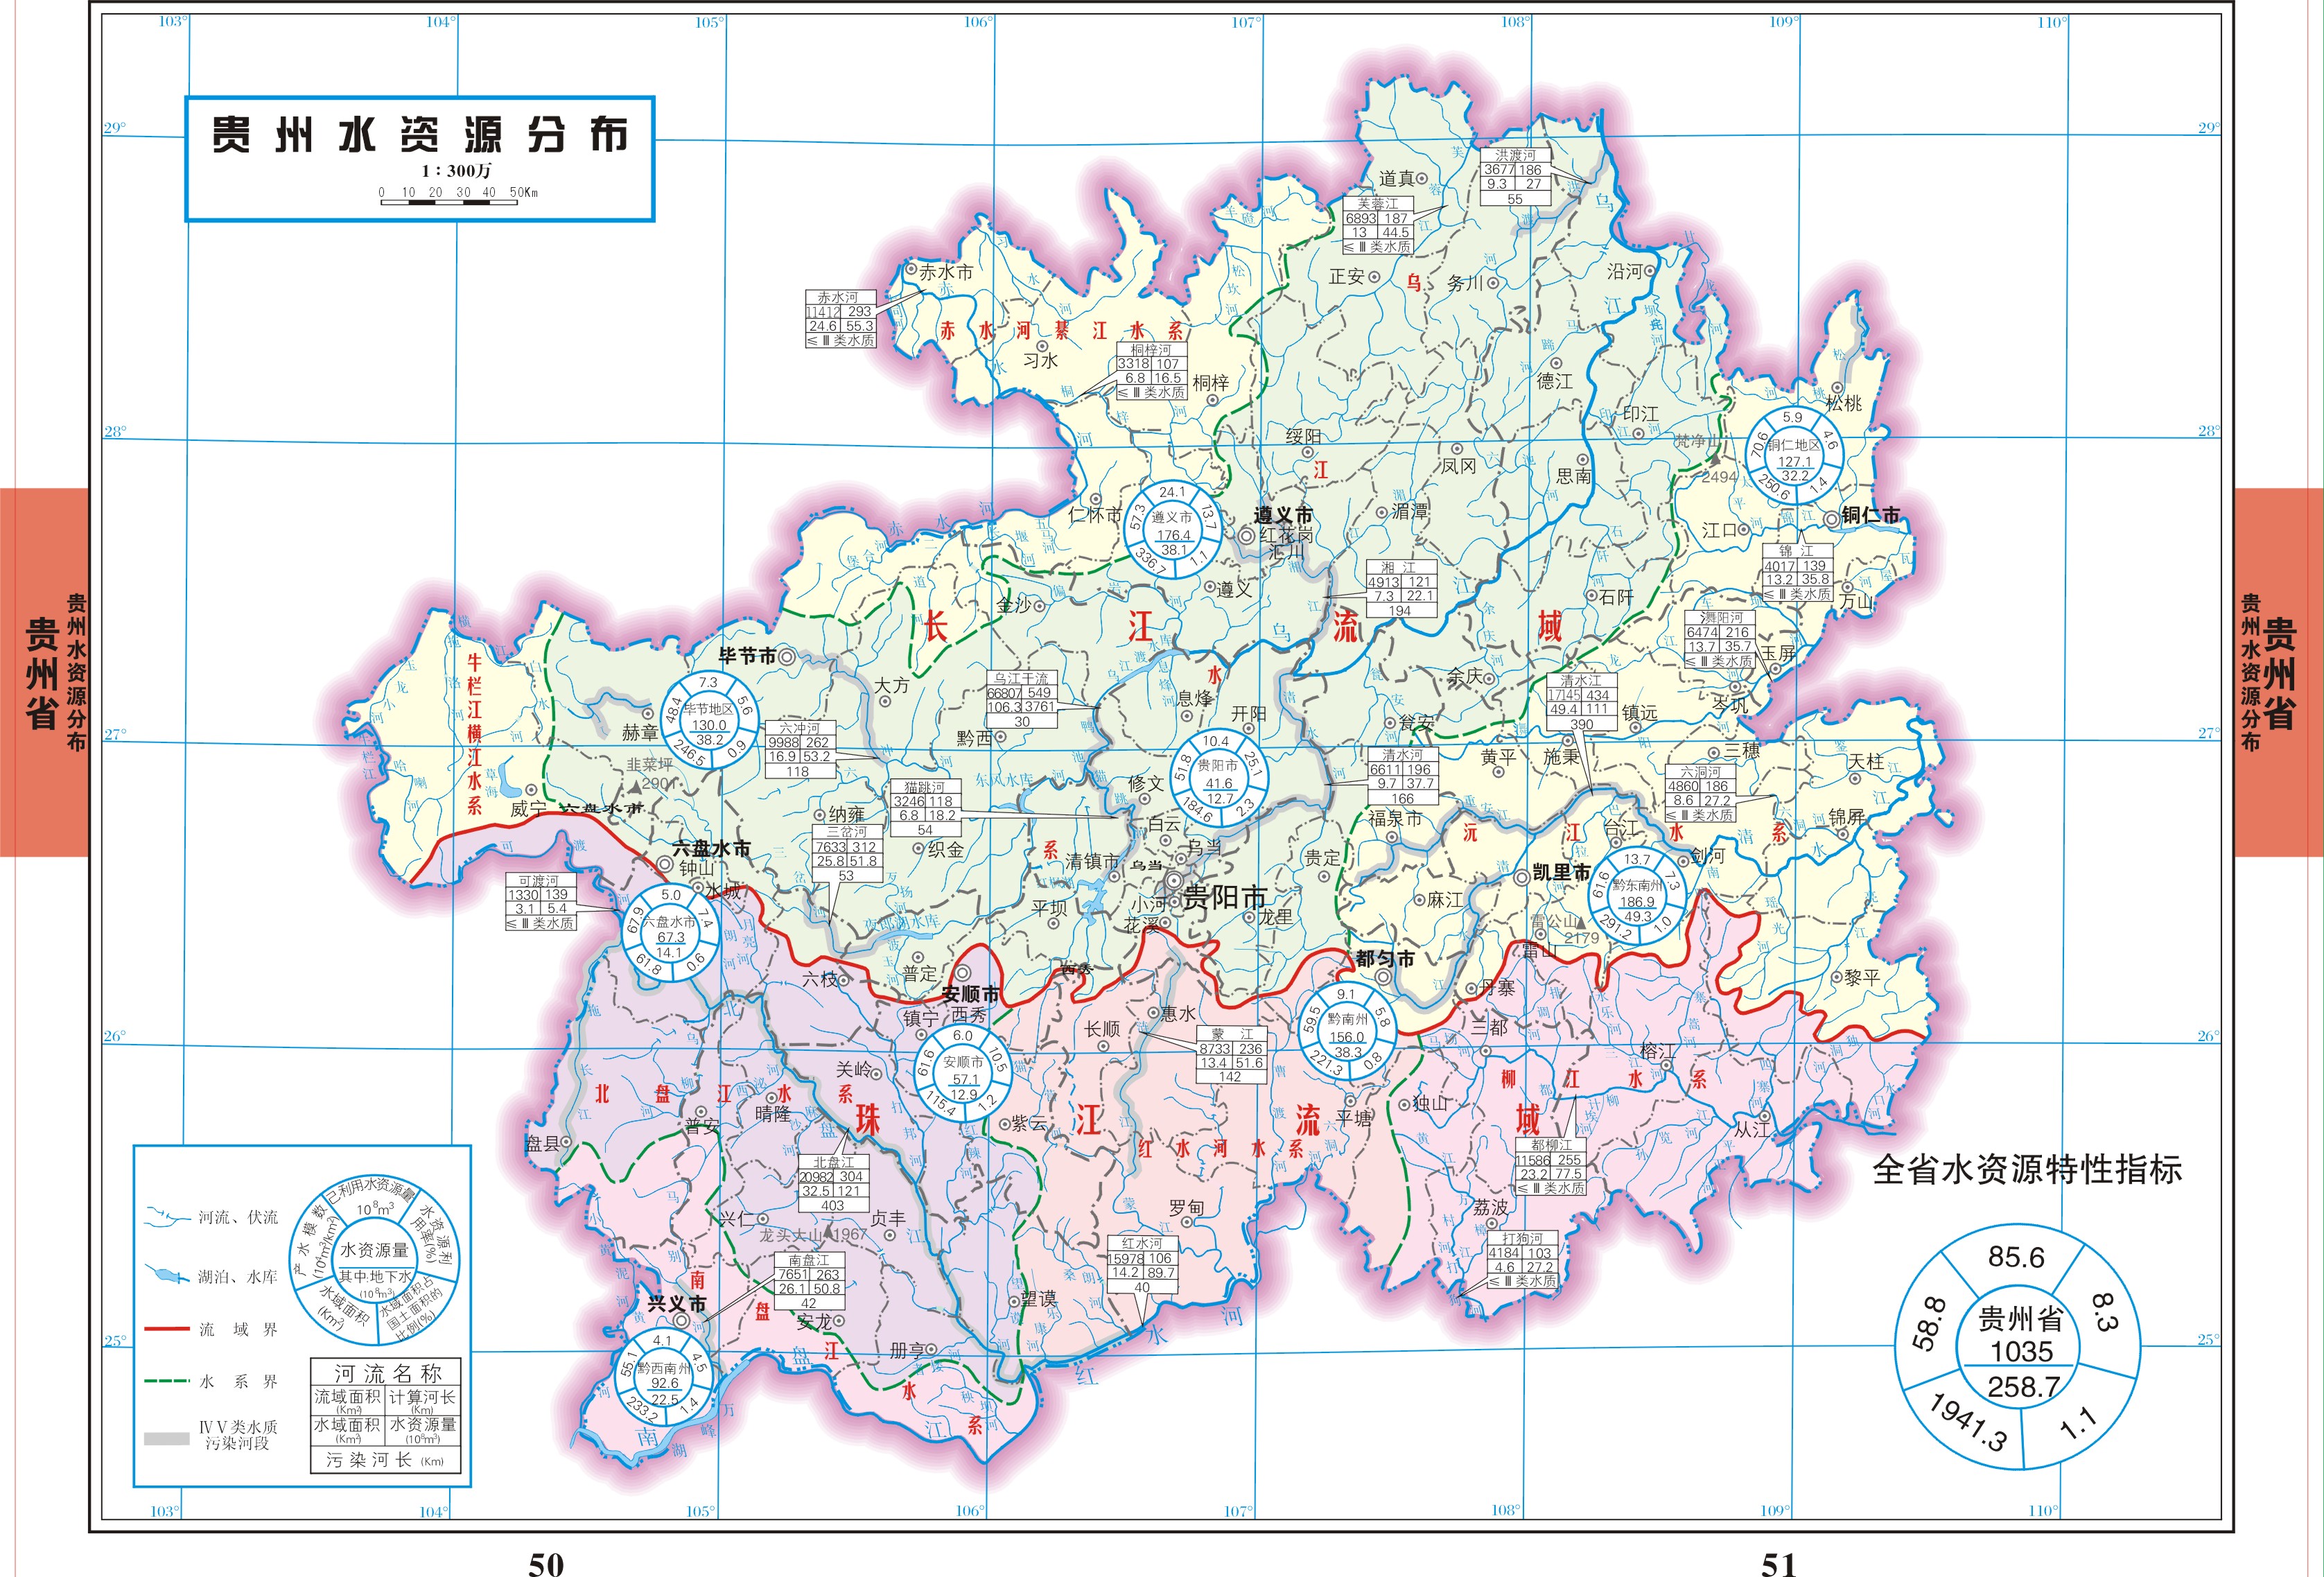 貴州省境內的珠江水系